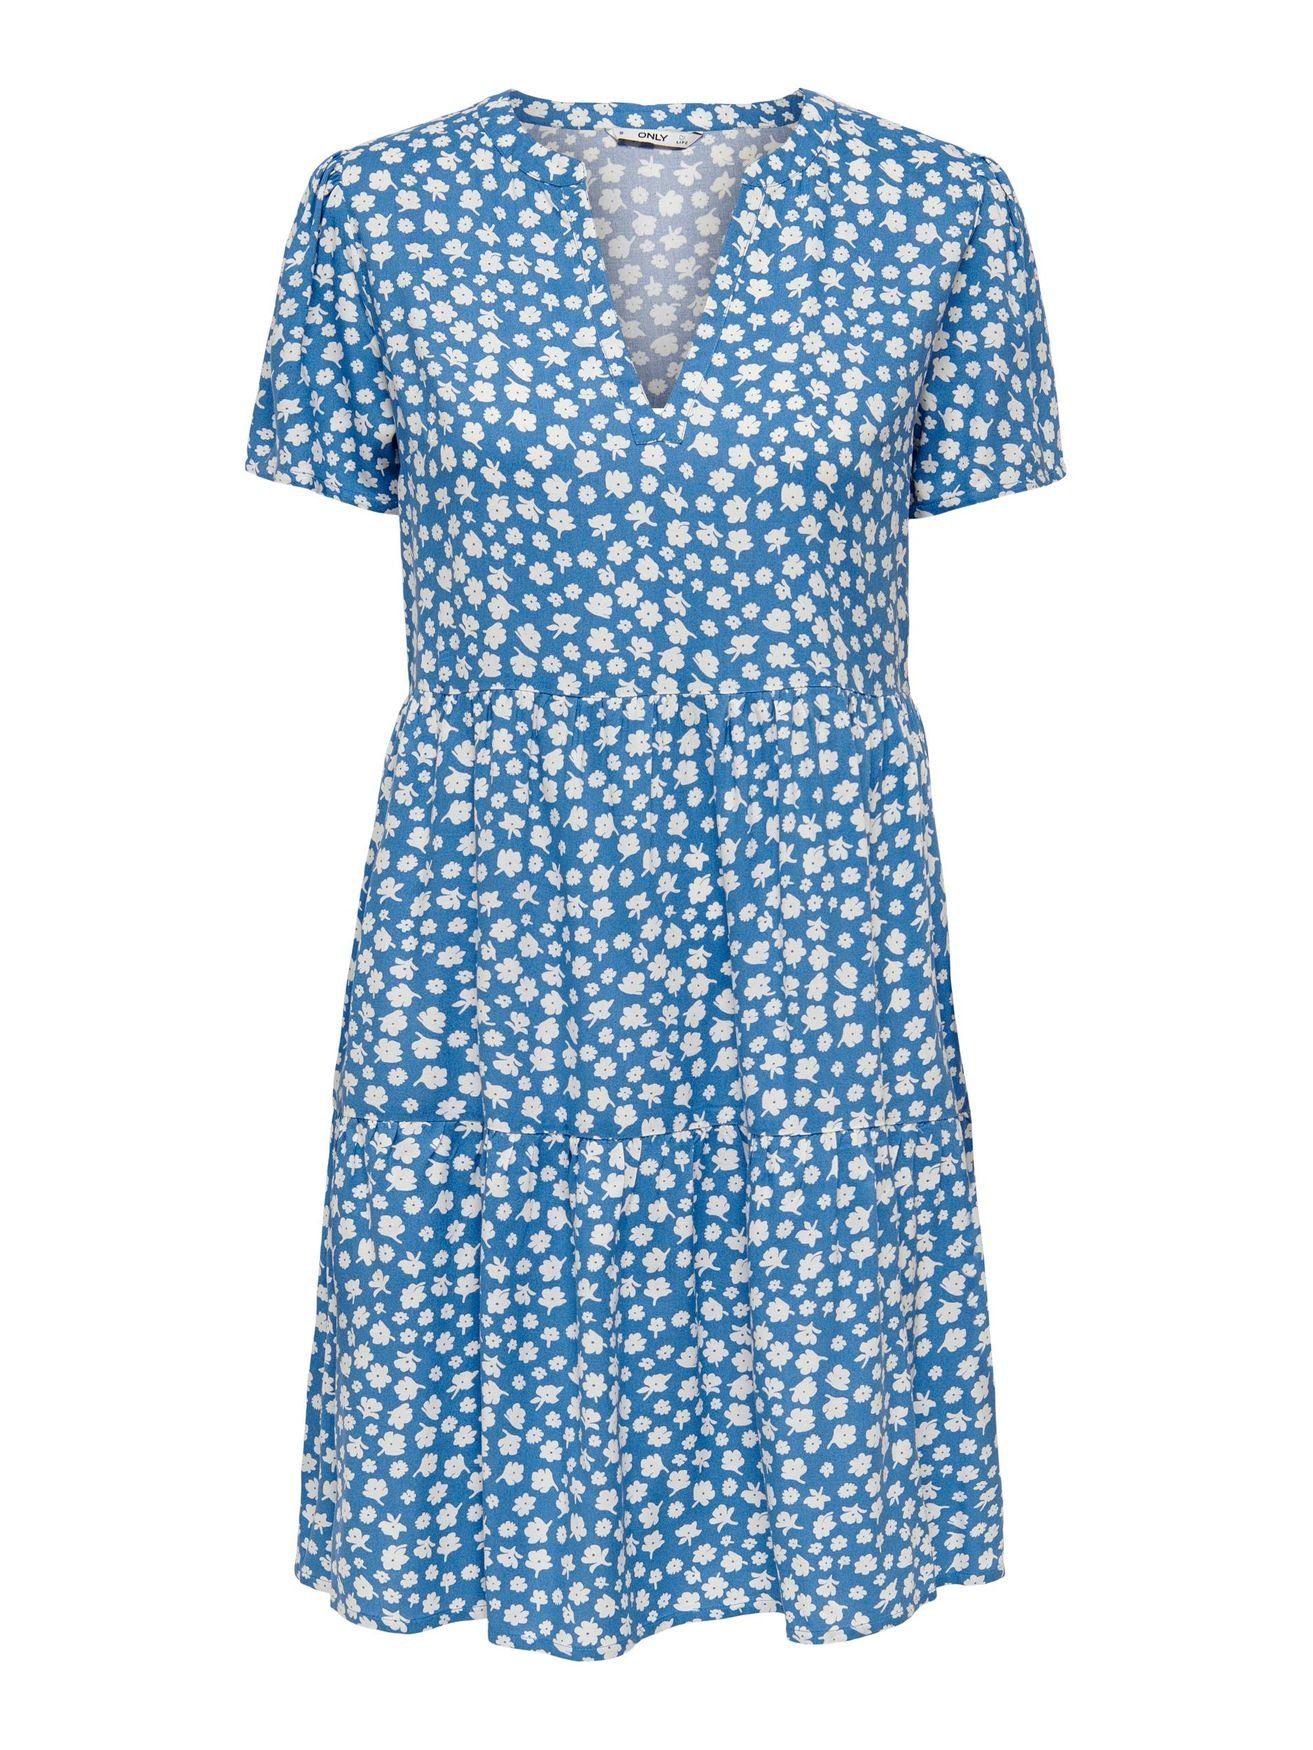 ONLY Shirtkleid (knielang) Kleid ONLZALLY 4928 in Kurzes Blusen V-Ausschnitt Blau